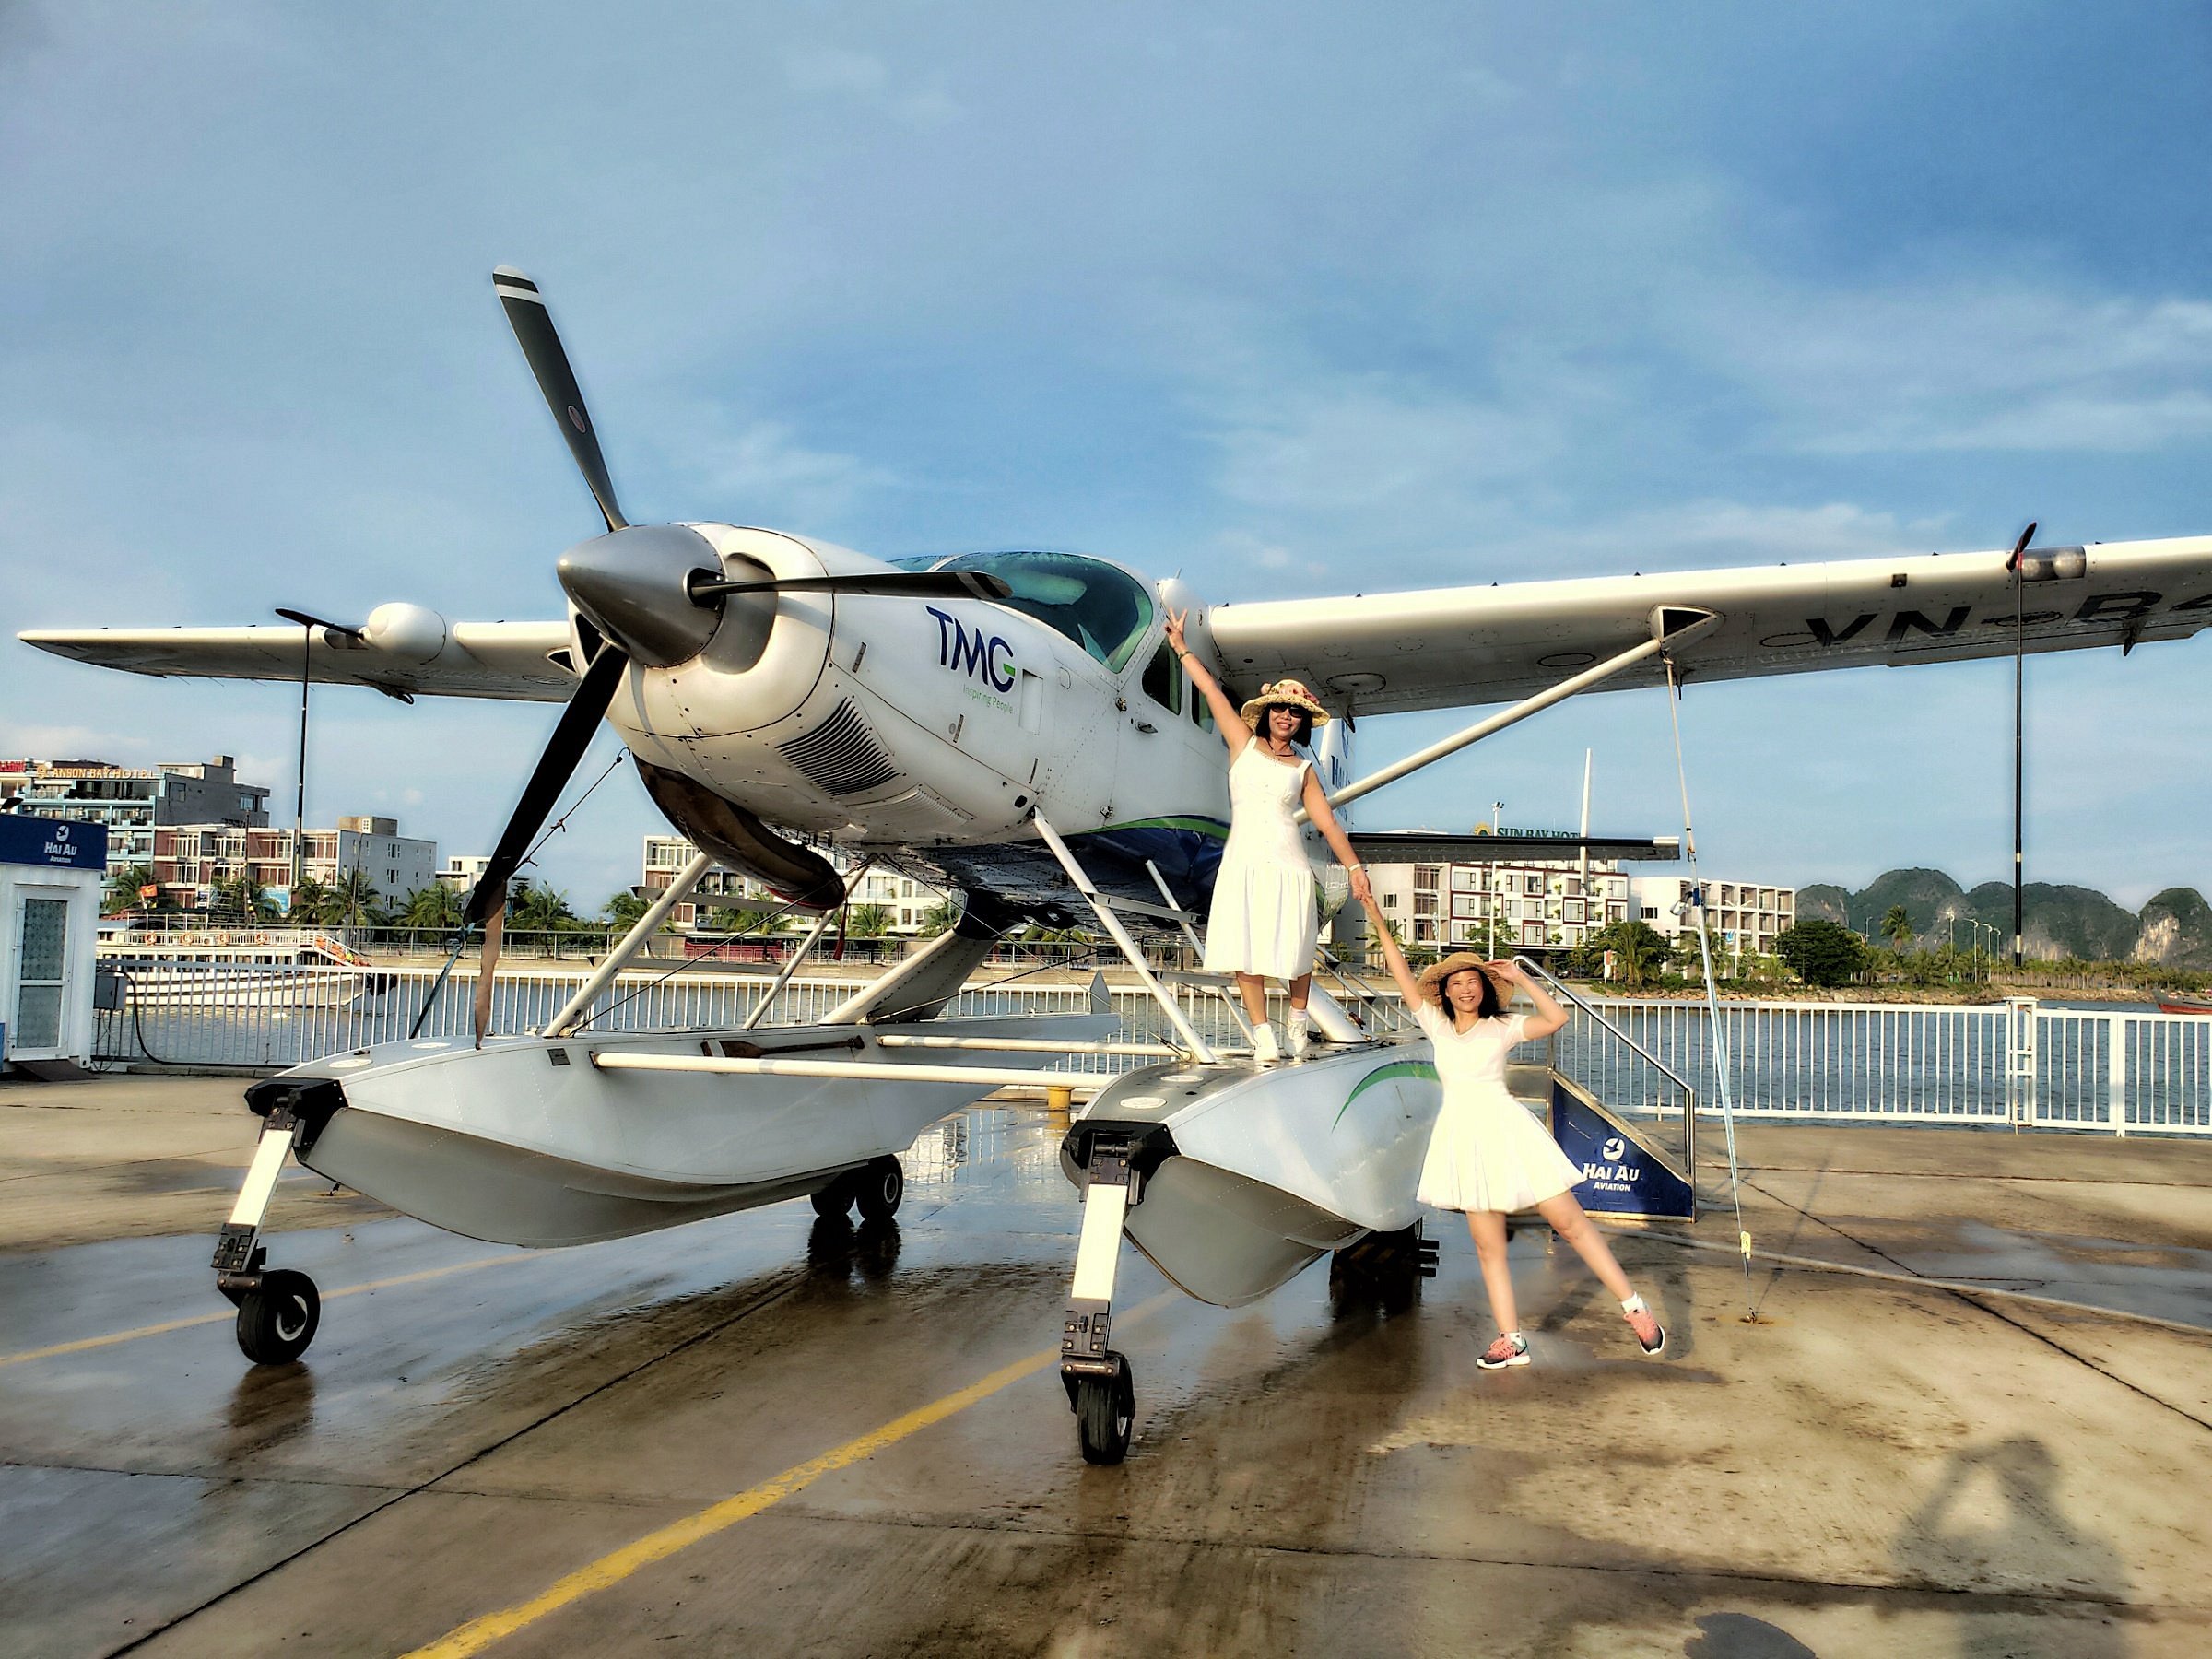 halong bay seaplane sightseeing tour